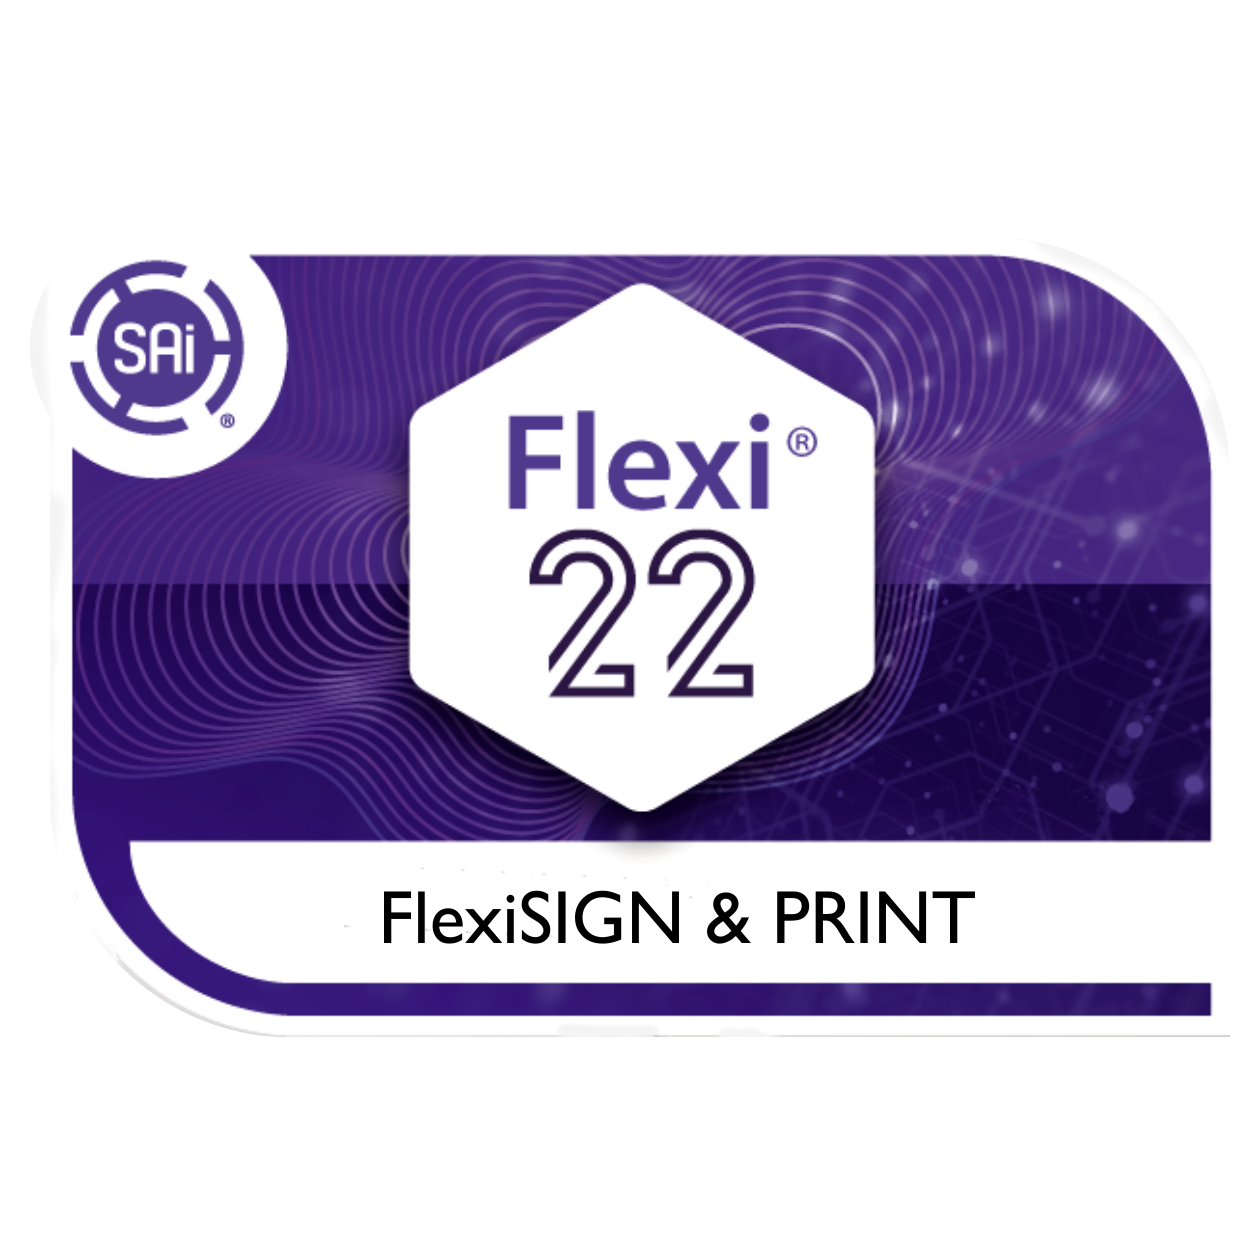 FlexiSIGN & PRINT Software v22